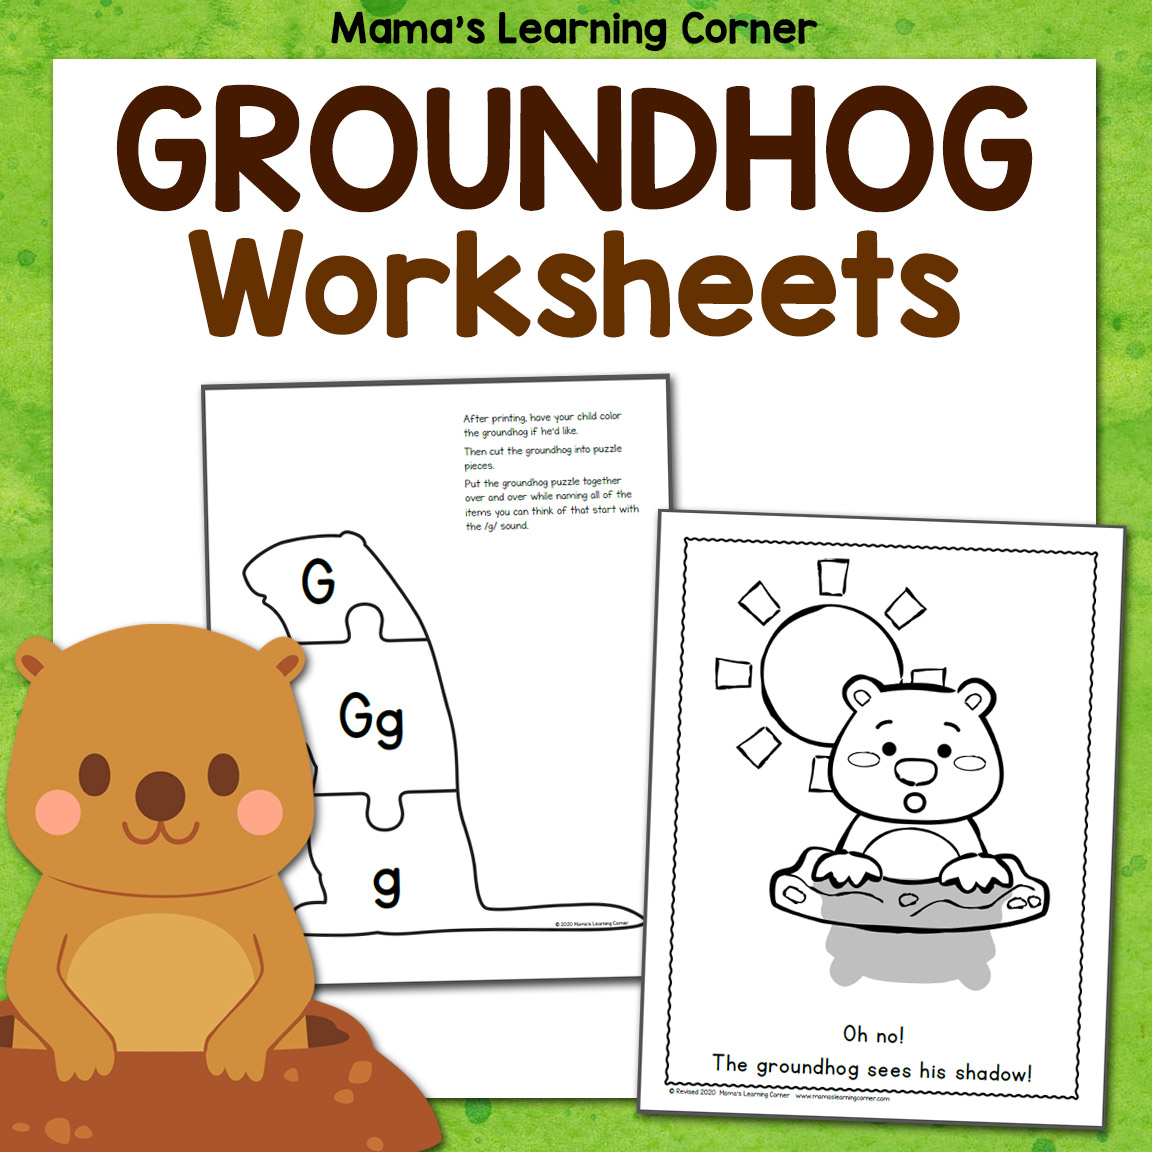 Groundhog day worksheets